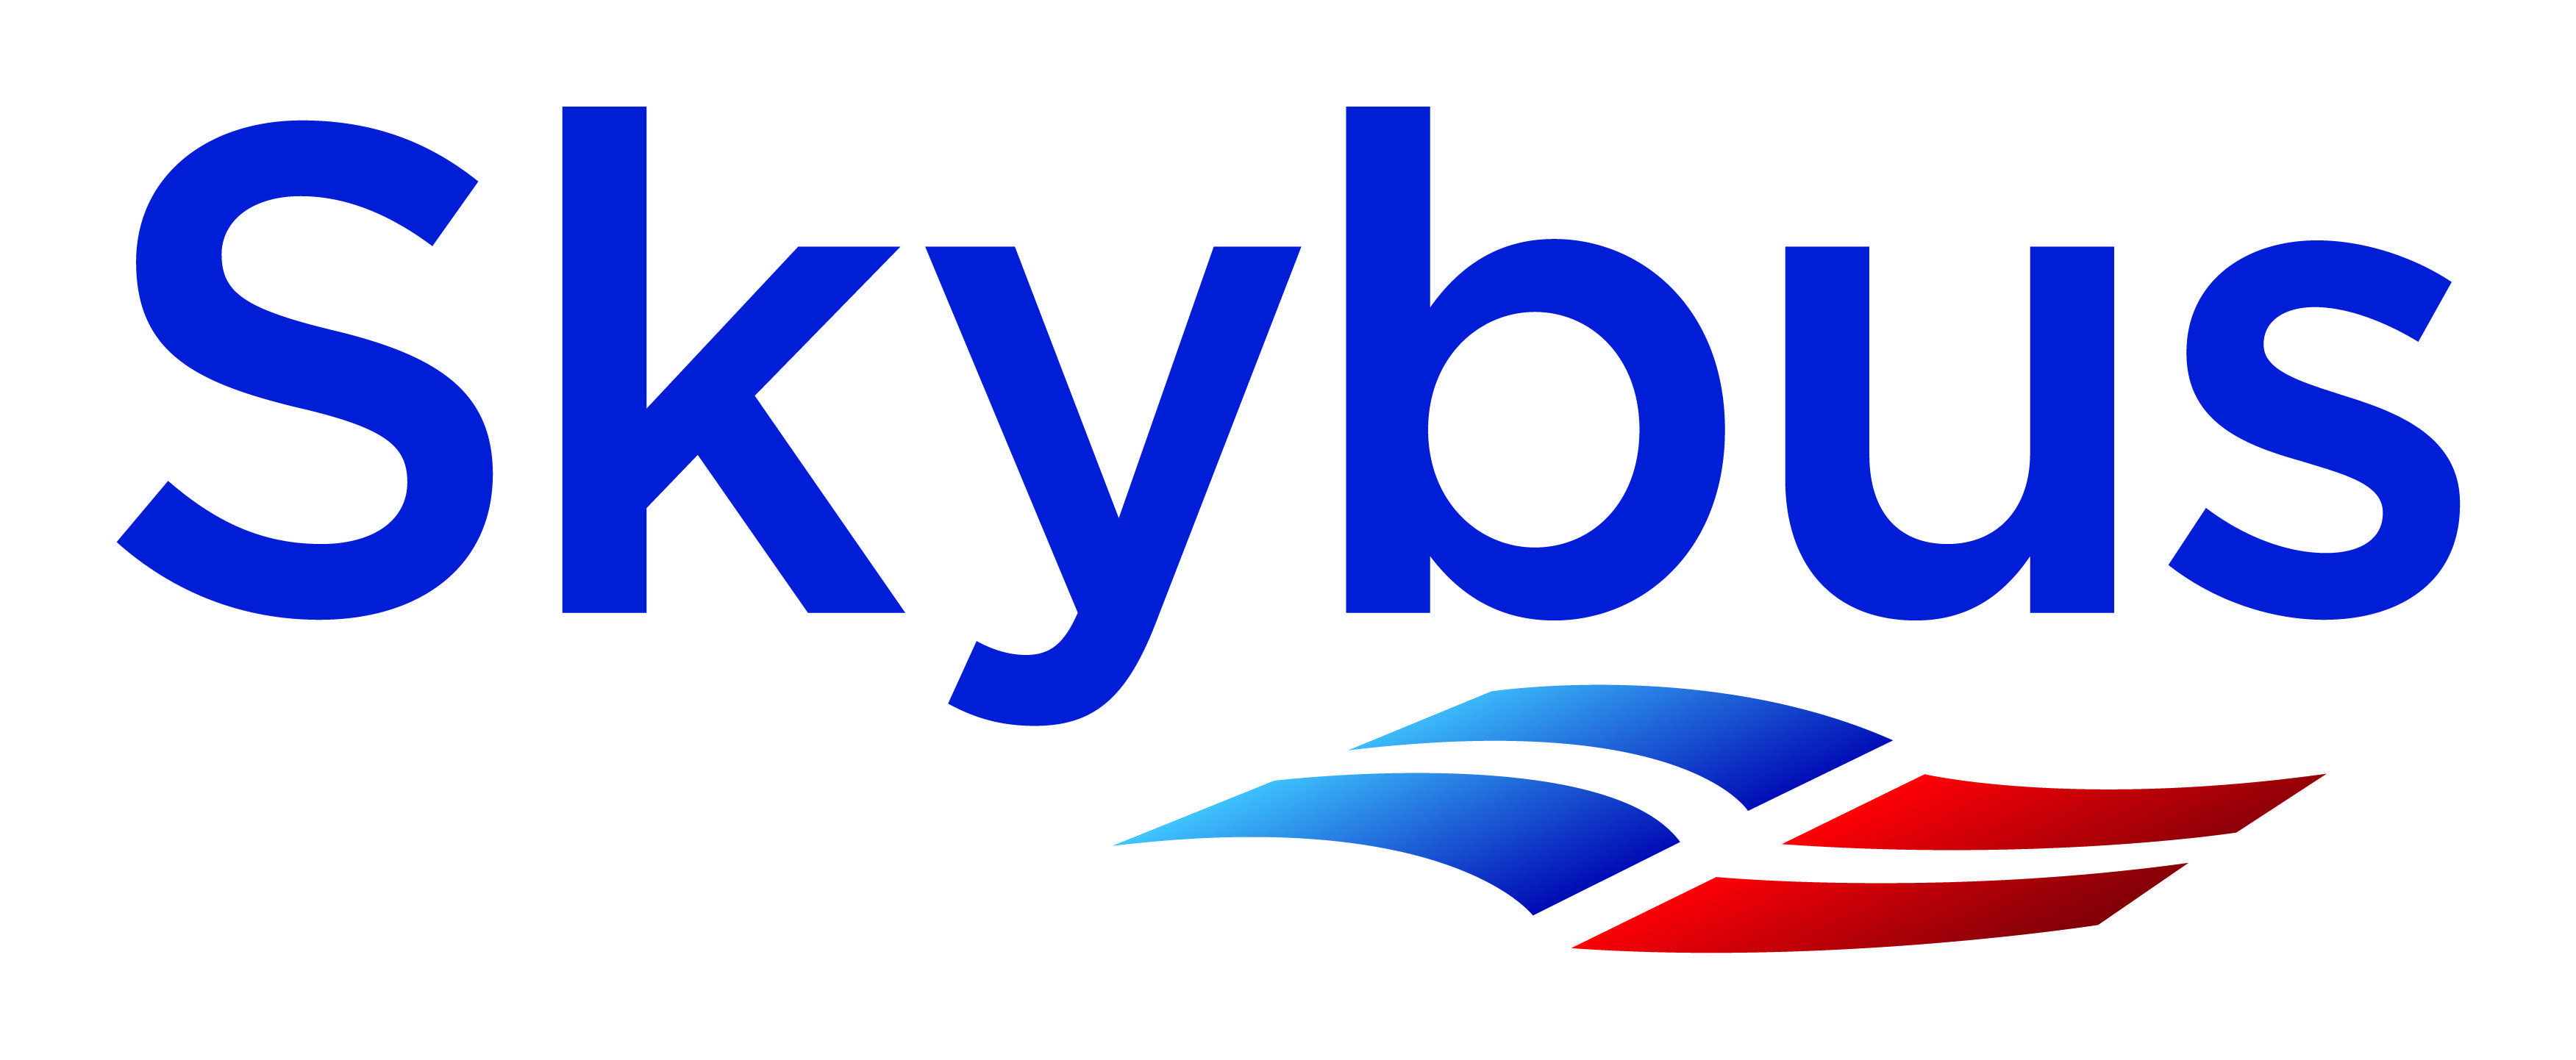 Blue and White Logo - SKYBUS IOS white LOGO - Exeter Airport